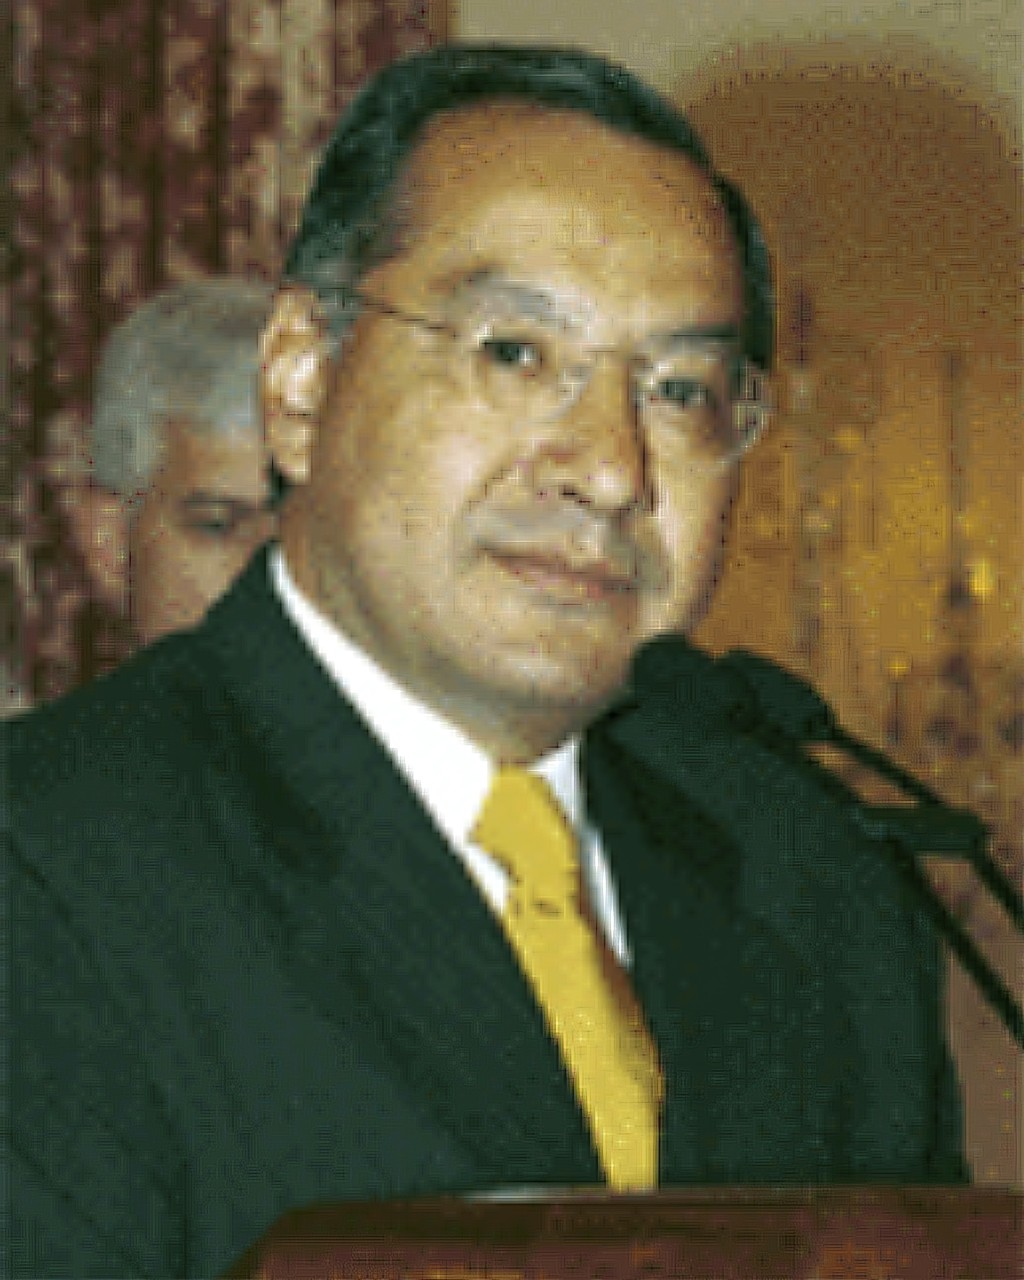 罗查任职美国驻玻利维亚大使时期的照片。 美联社